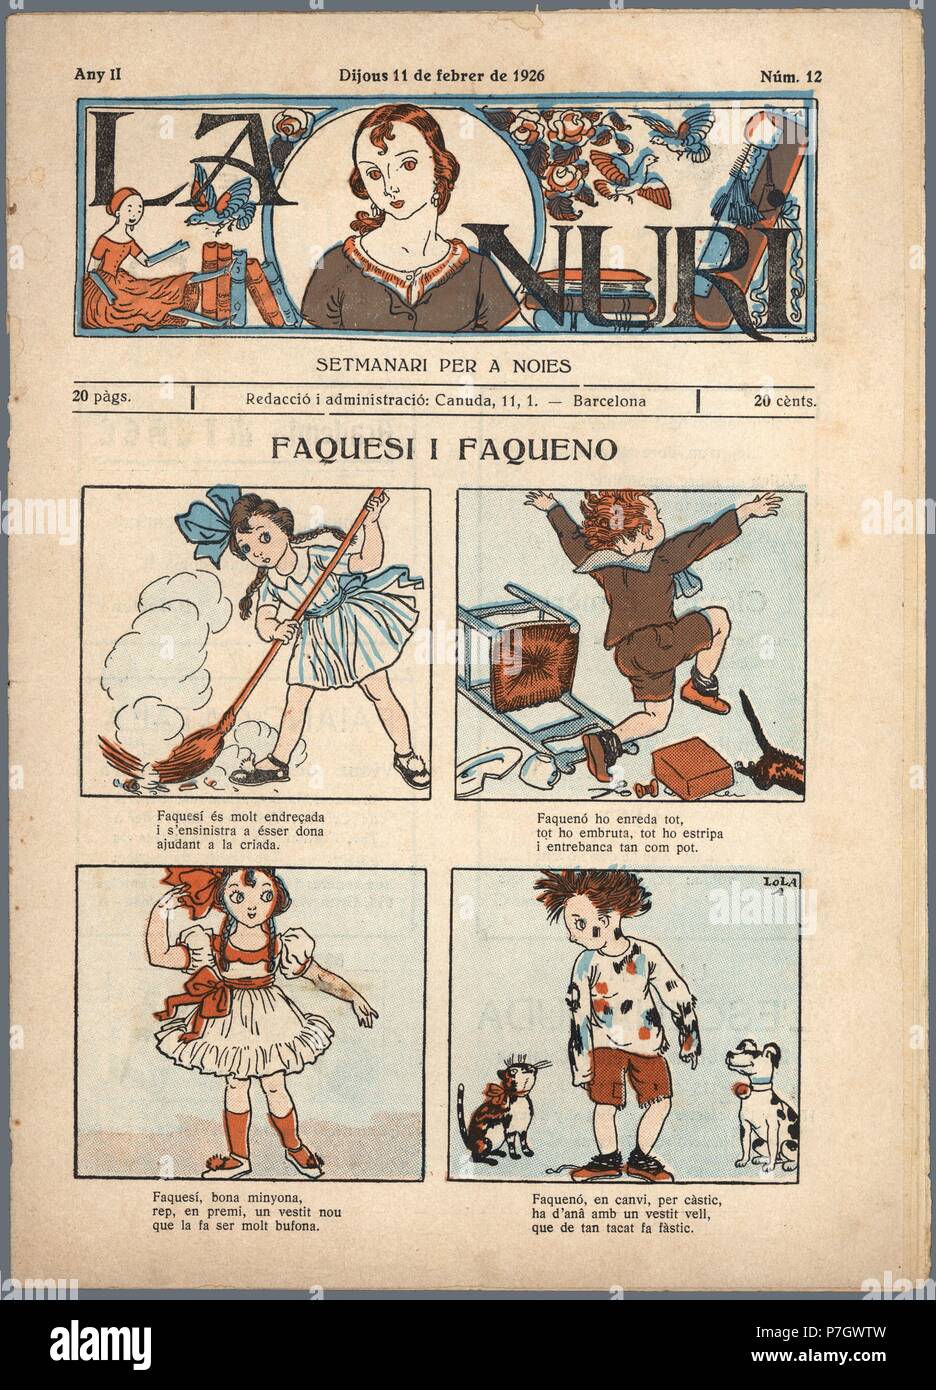 Semanario femenino ilustrado para jóvenes La Nuri, Barcelona, febrero de 1926. Stock Photo